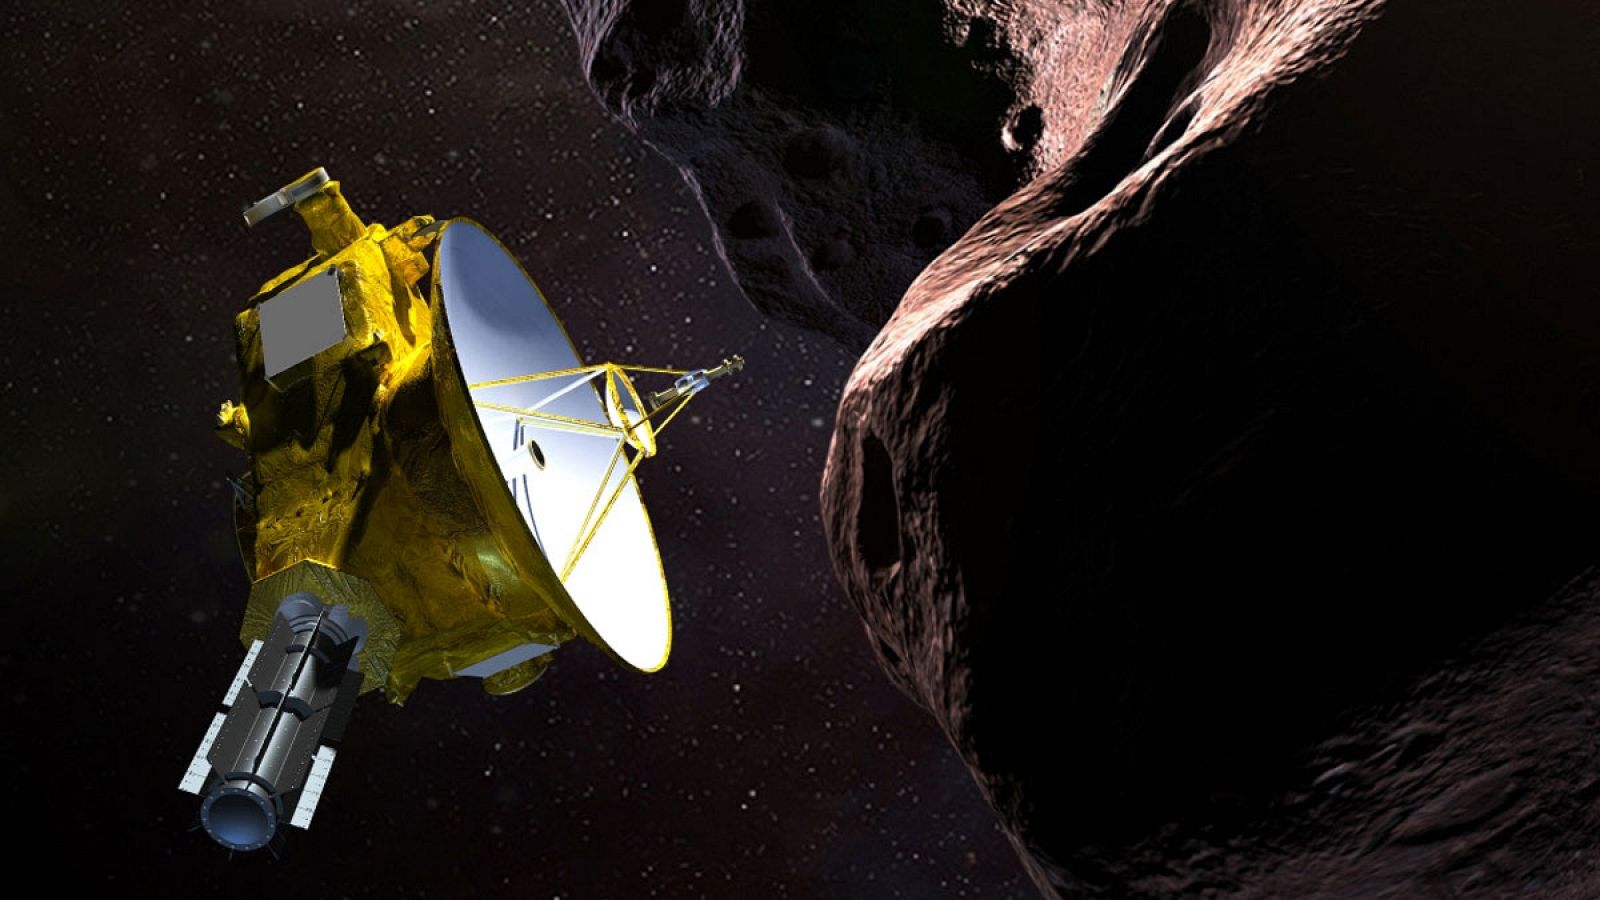 Representación de la nave espacial New Horizons de la NASA, sobre "Ultima Thule", que significa en latín "un lugar más allá del mundo conocido".